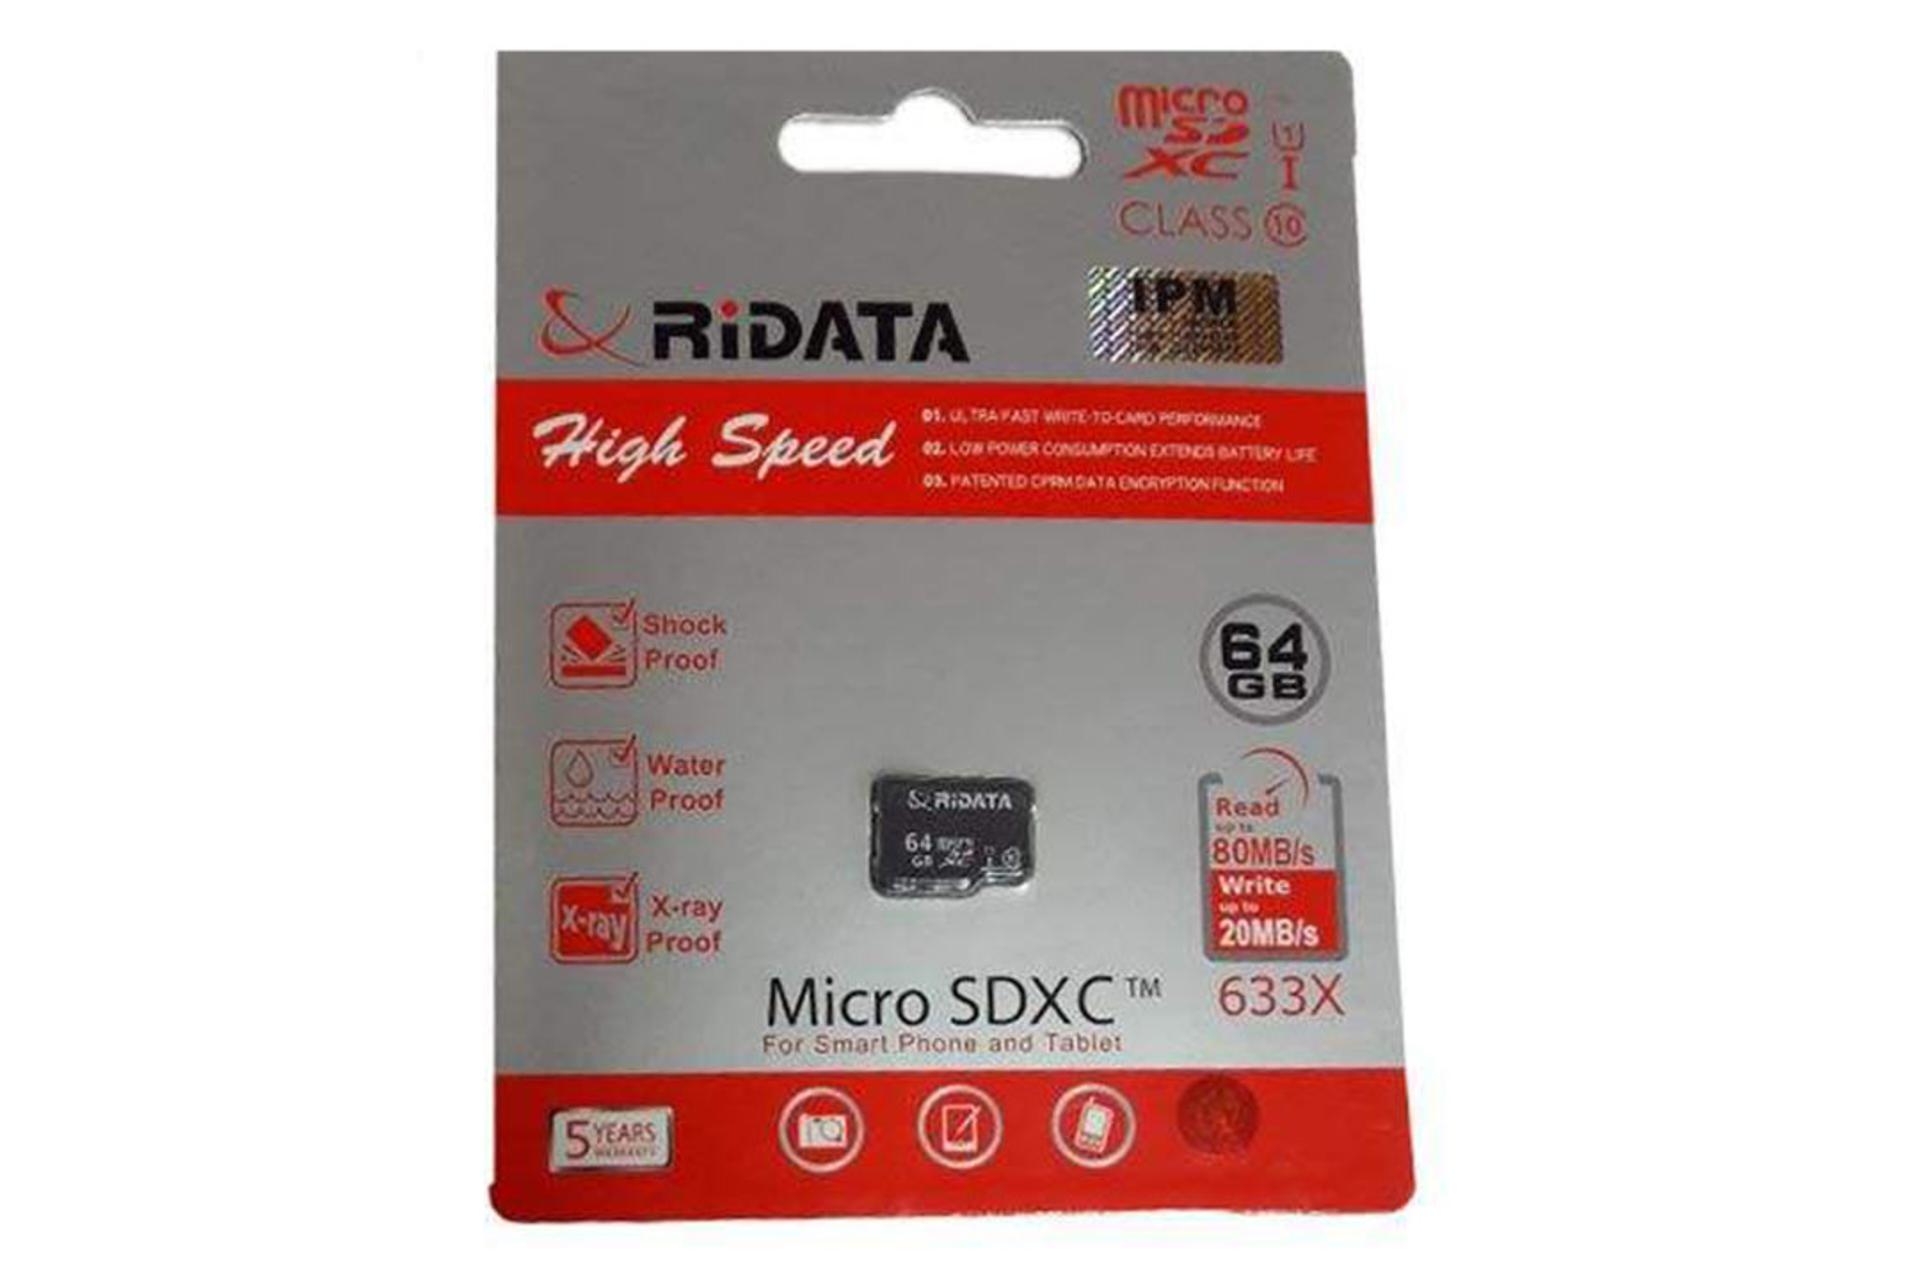 مرجع متخصصين ايران RiDATA High Speed microSDXC Class 10 UHS-I U1 64GB